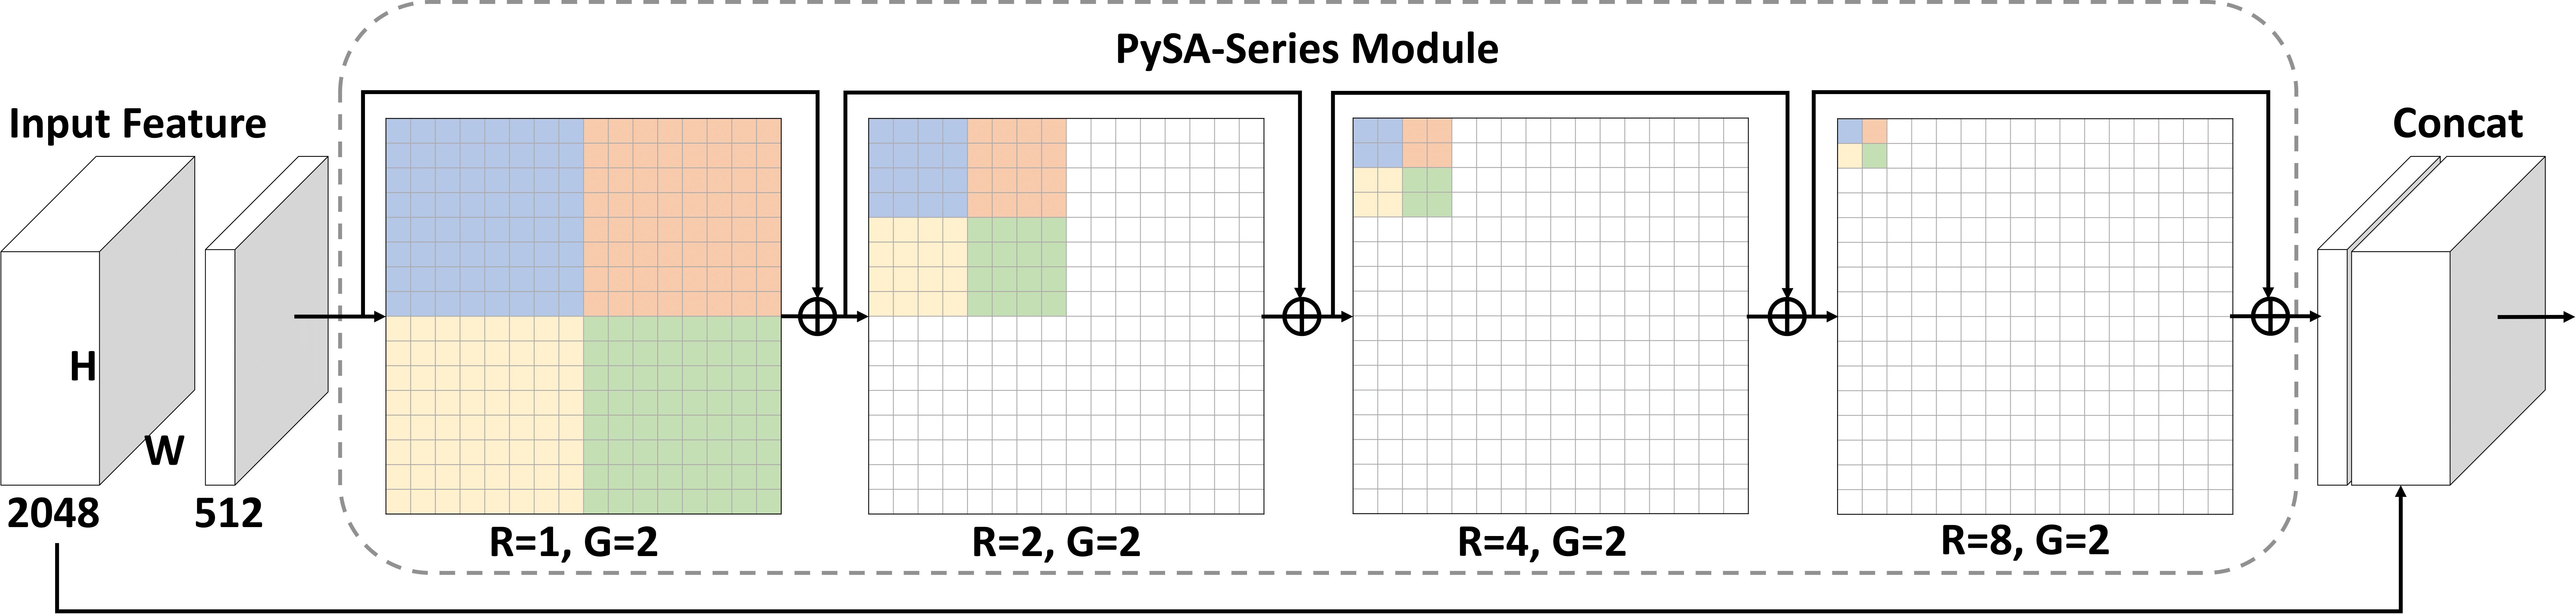 PySA-Series